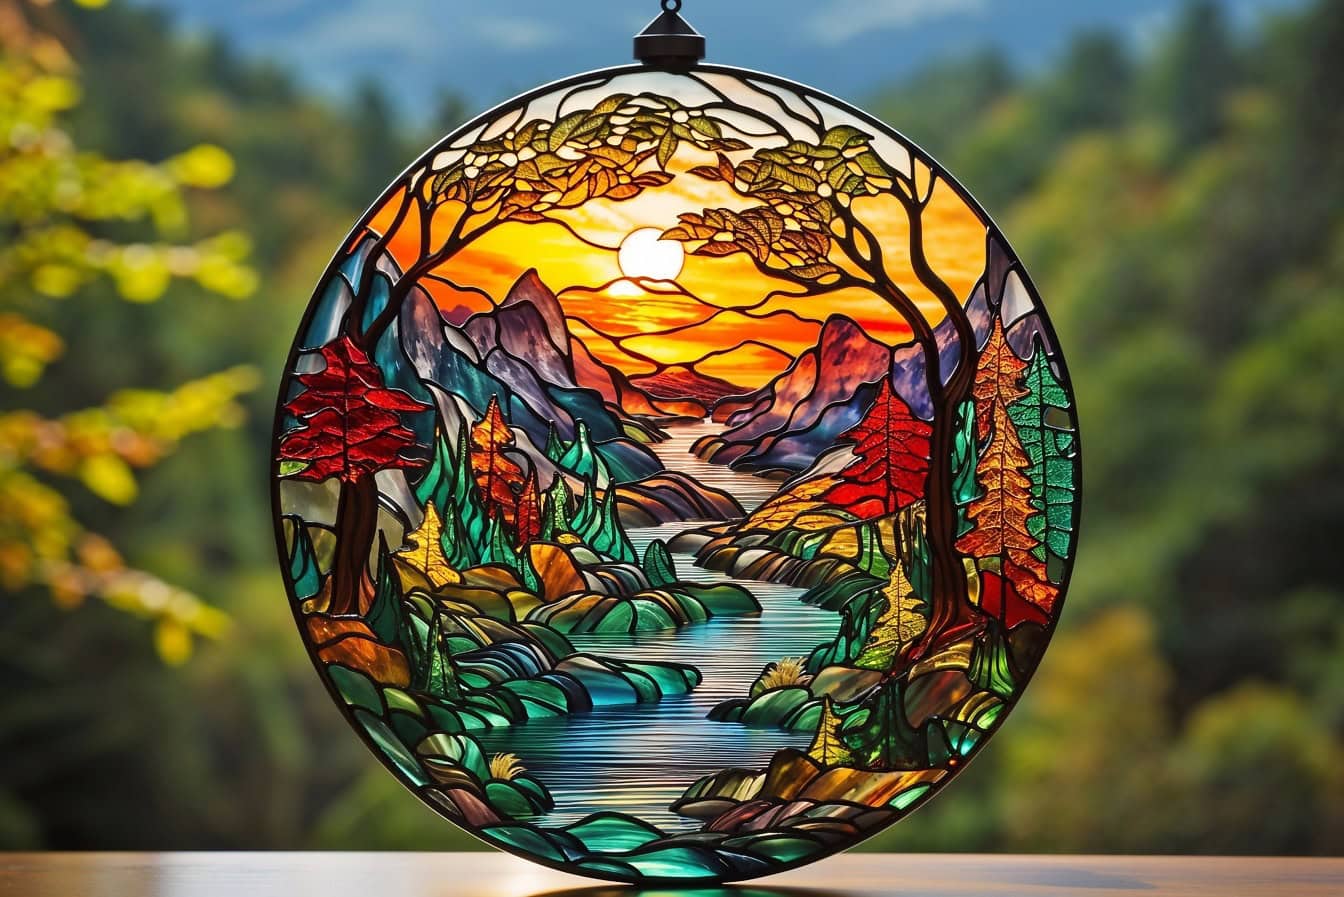 Ръчно изработена кръгла витражна декорация с тема за реката и планините през есента със слънчеви лъчи като подсветка